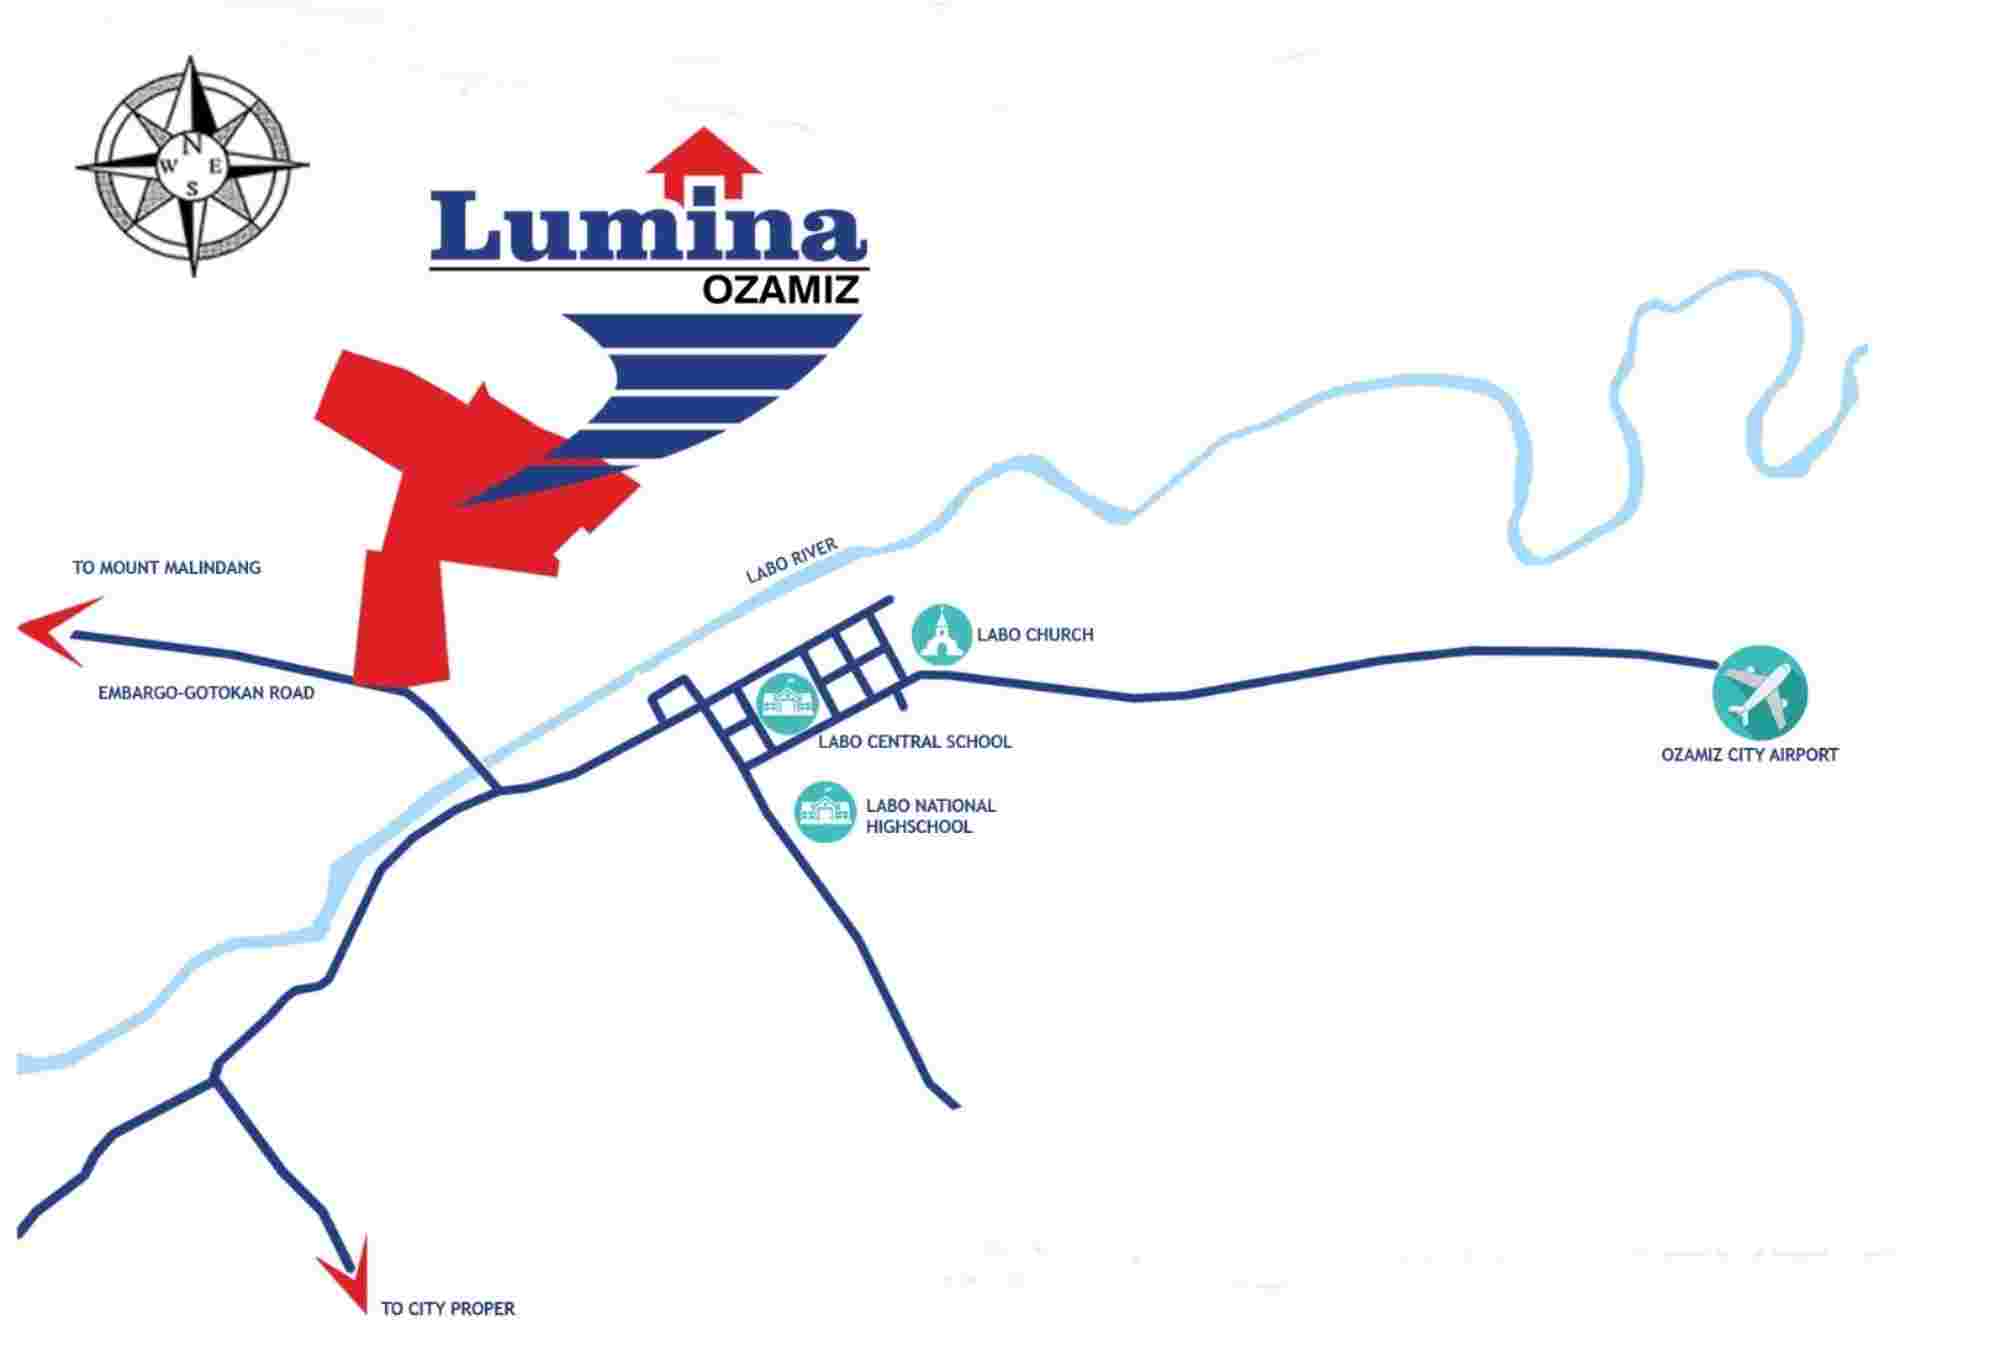 LUMINA-OZAMIZ_MAP-1641185267.jpg